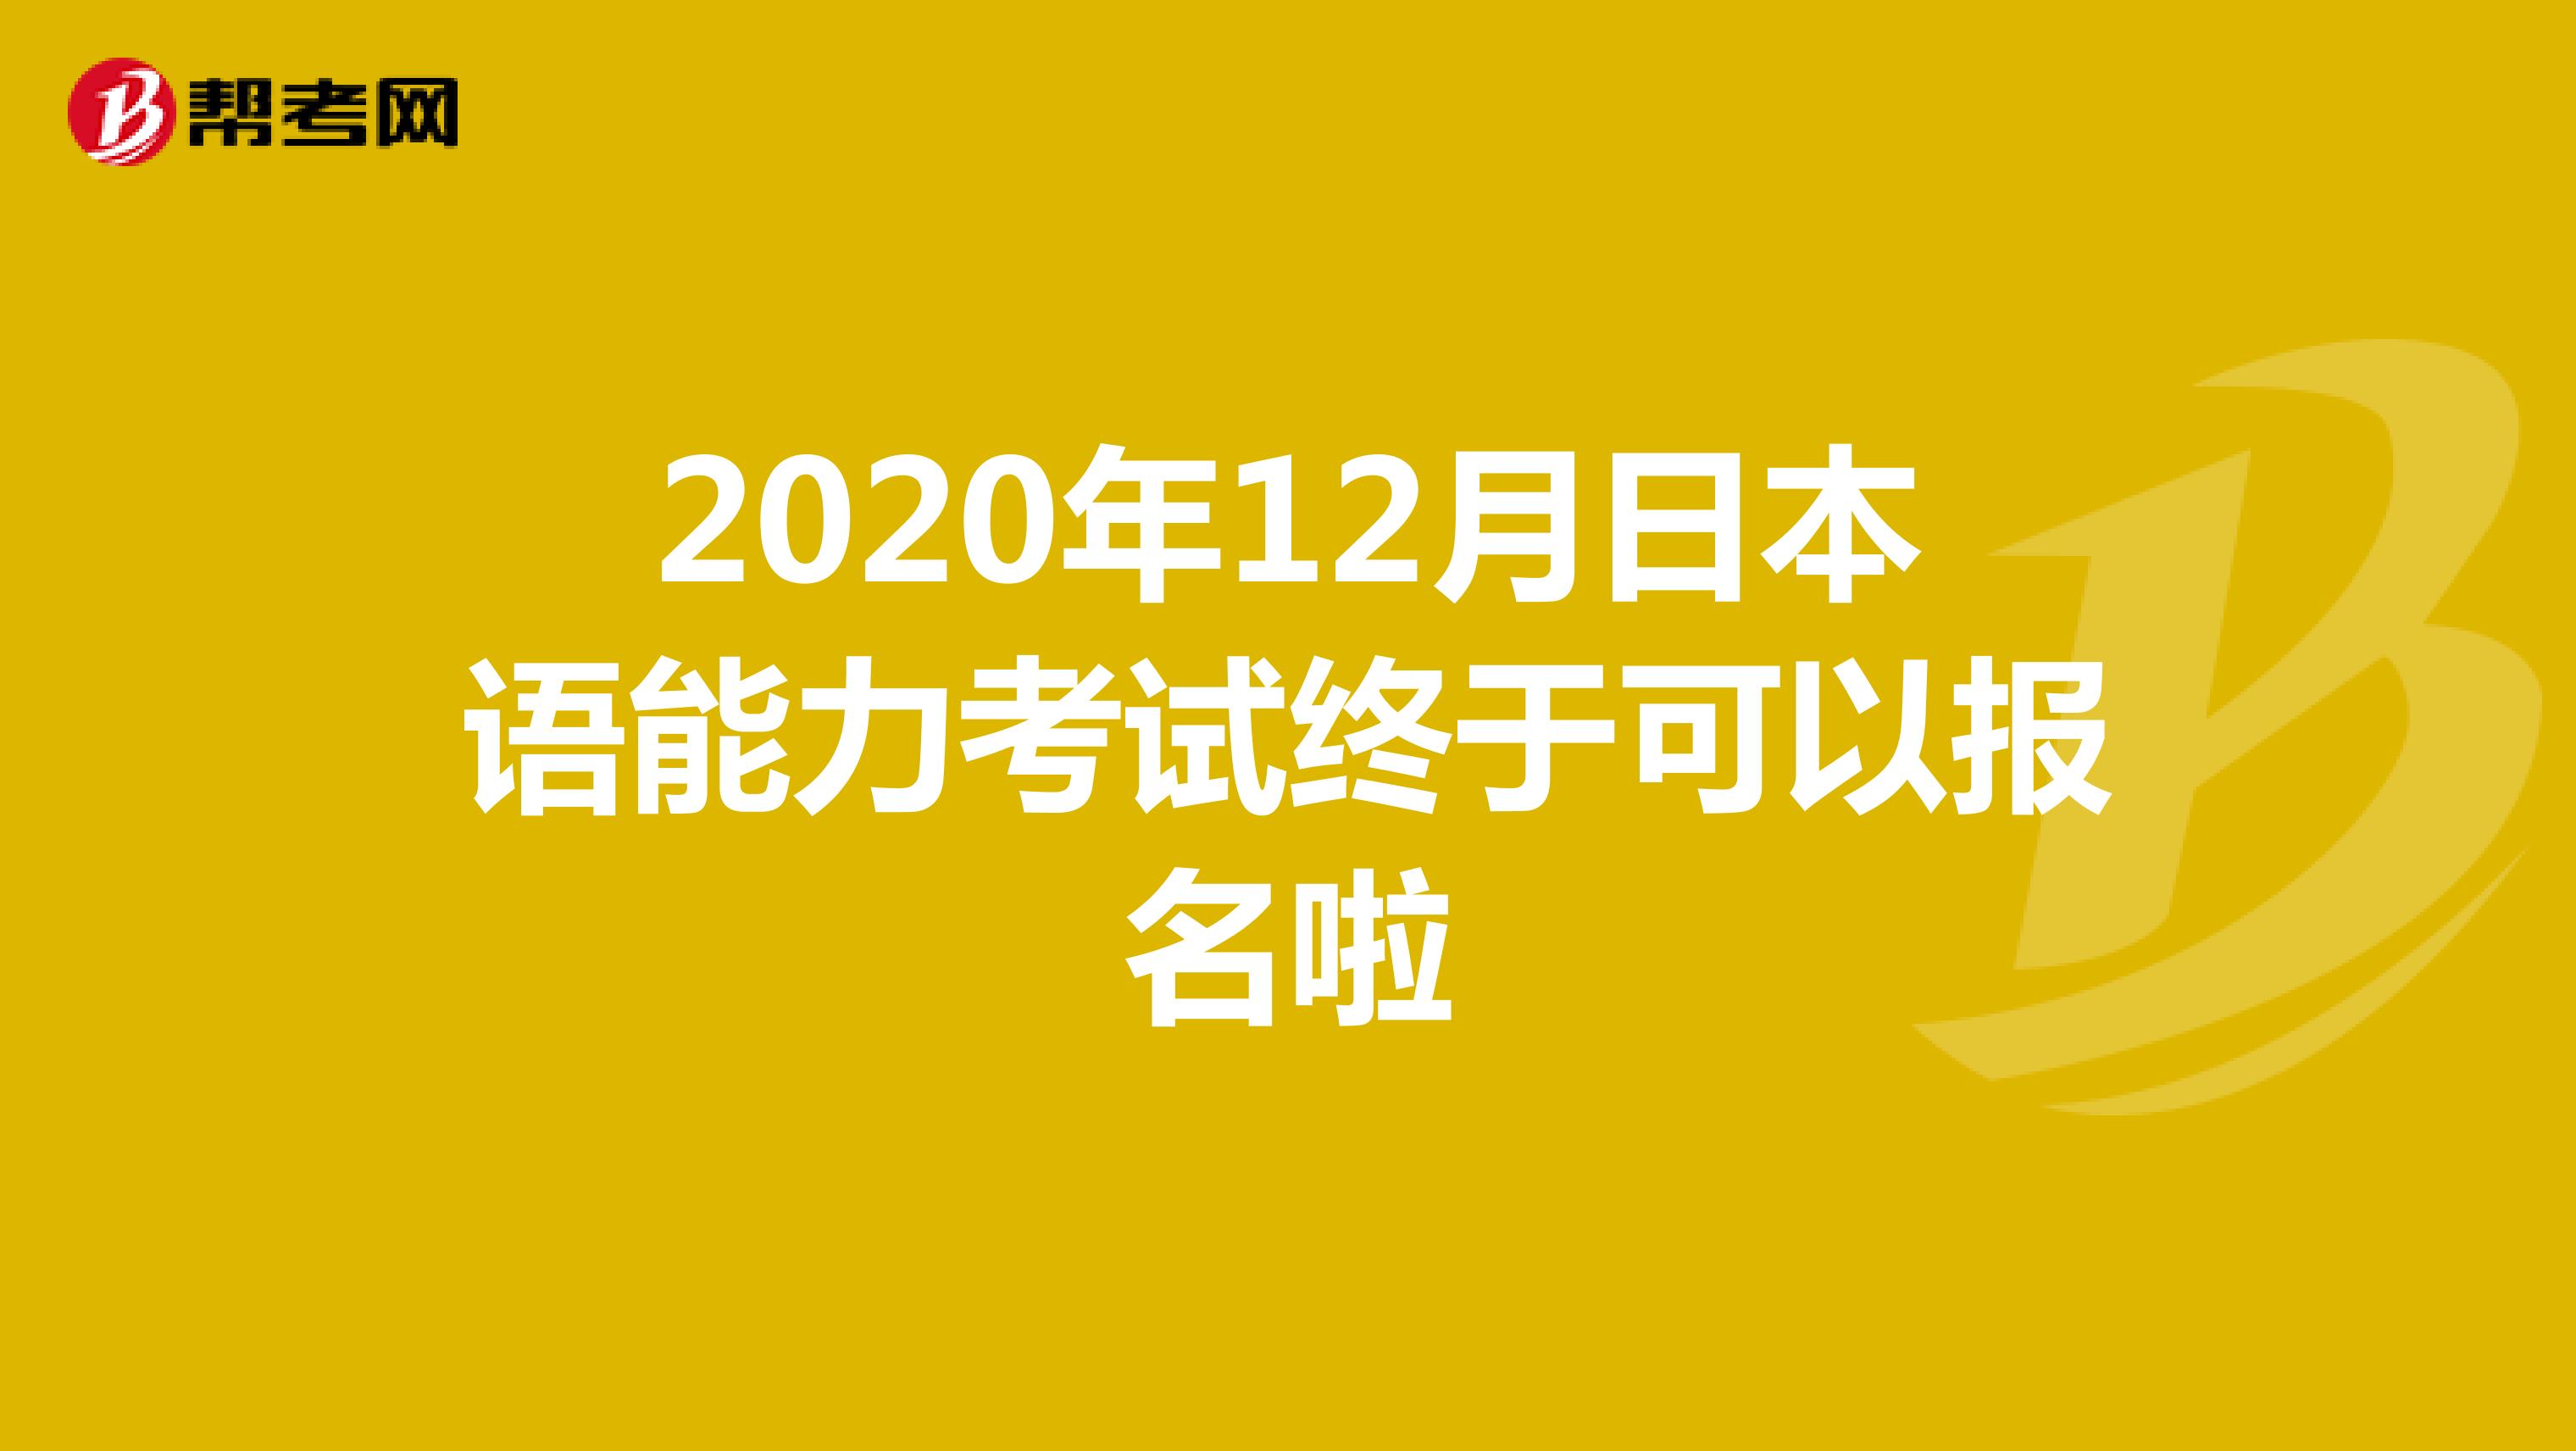 2020年12月日本语能力考试终于可以报名啦